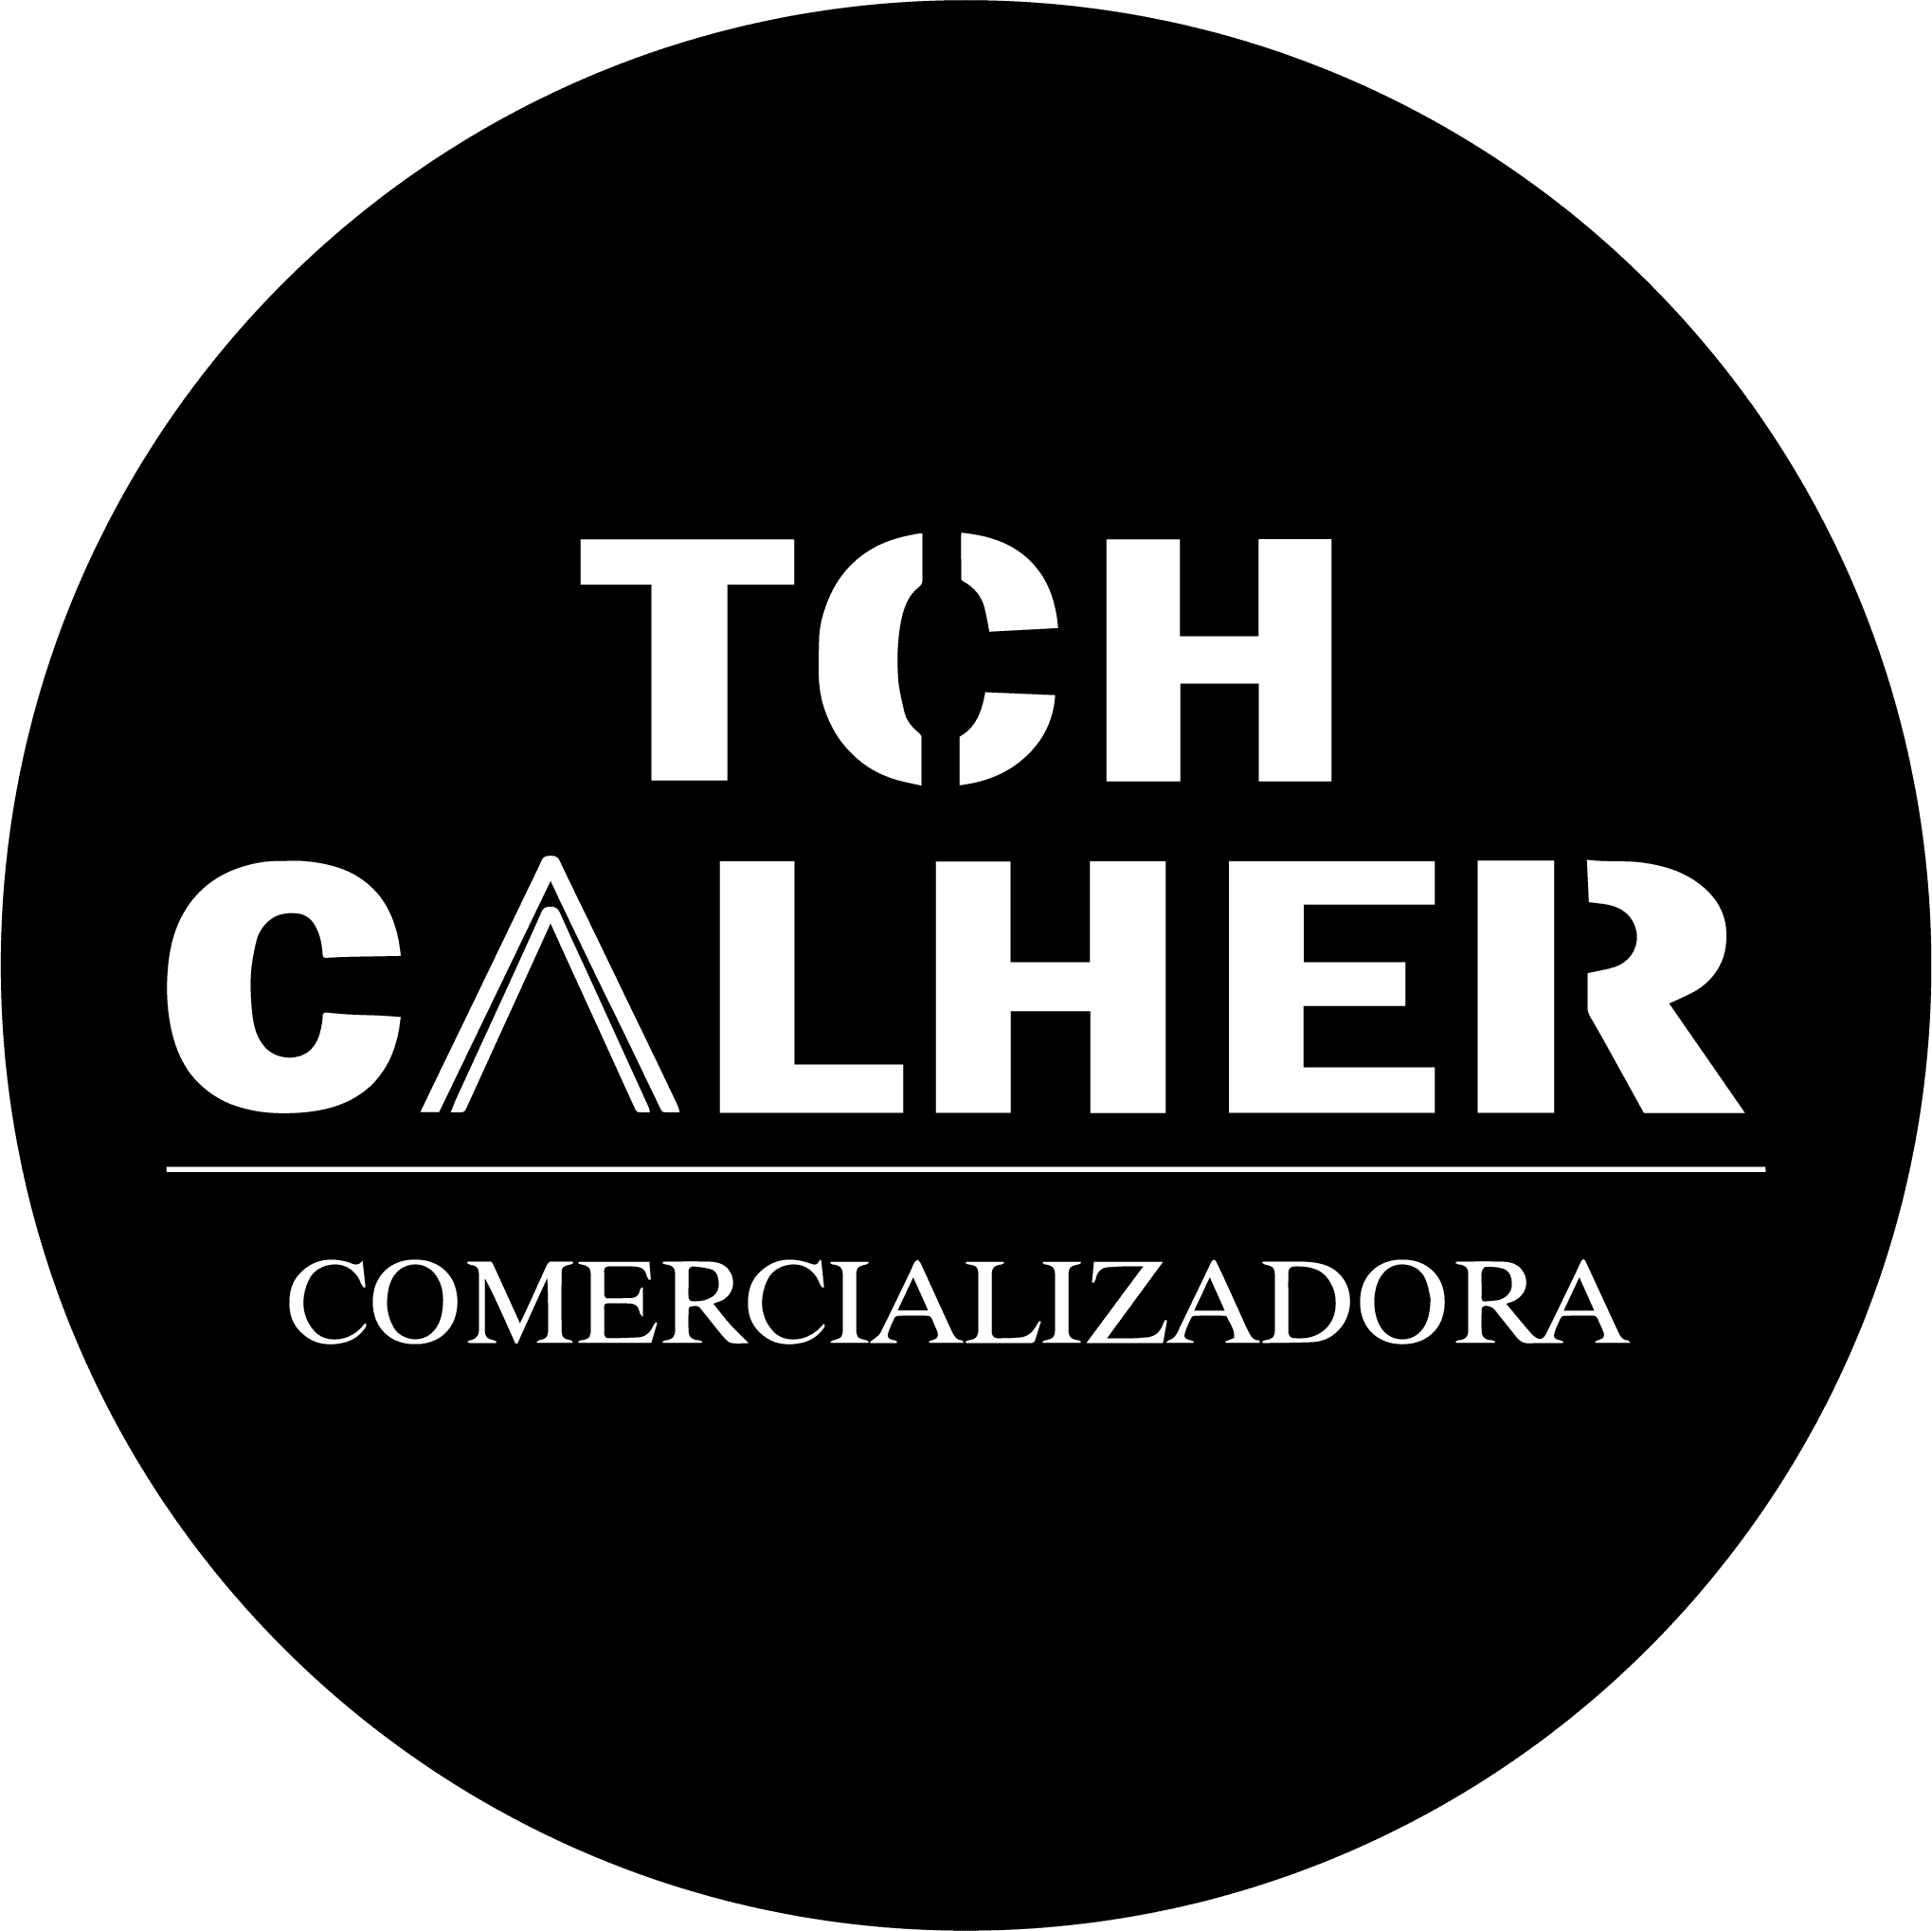 TCH Calher